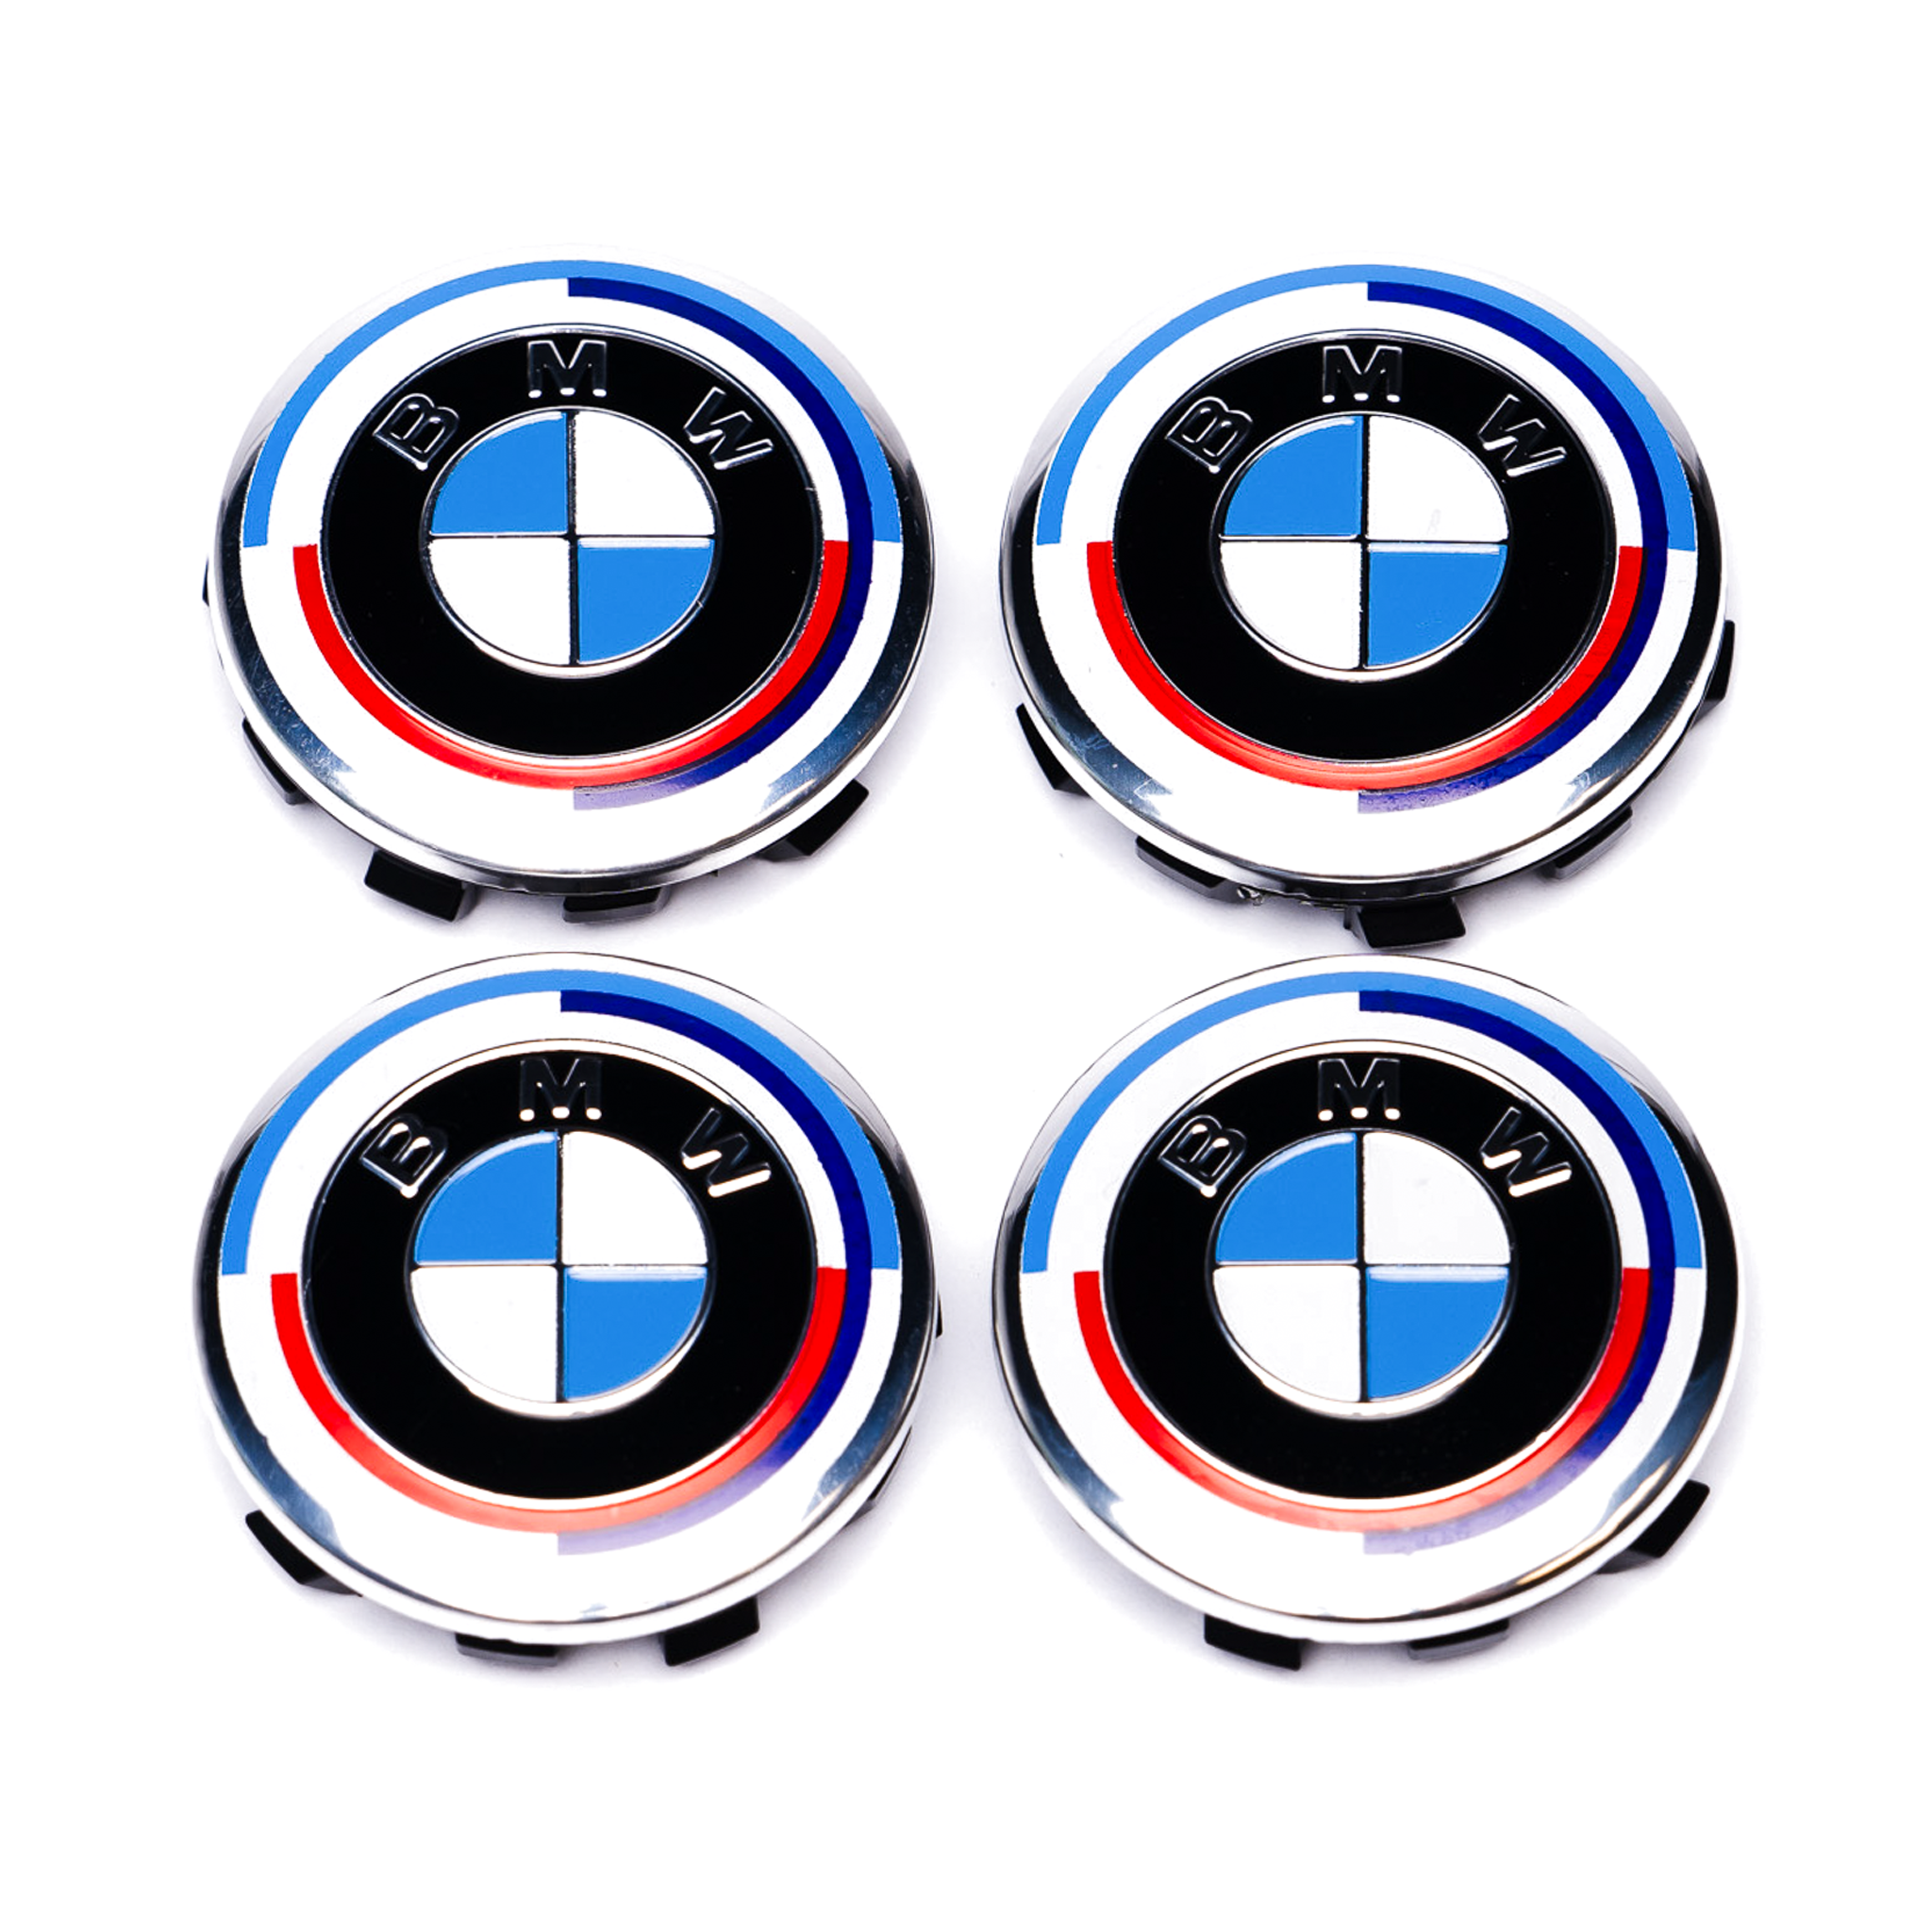 Tapa central de rueda Exon BMW Style Stealth negra/blanca para BMW 1 2 3 5 7 8 X1 X2 X3 X4 X5 X6 X7